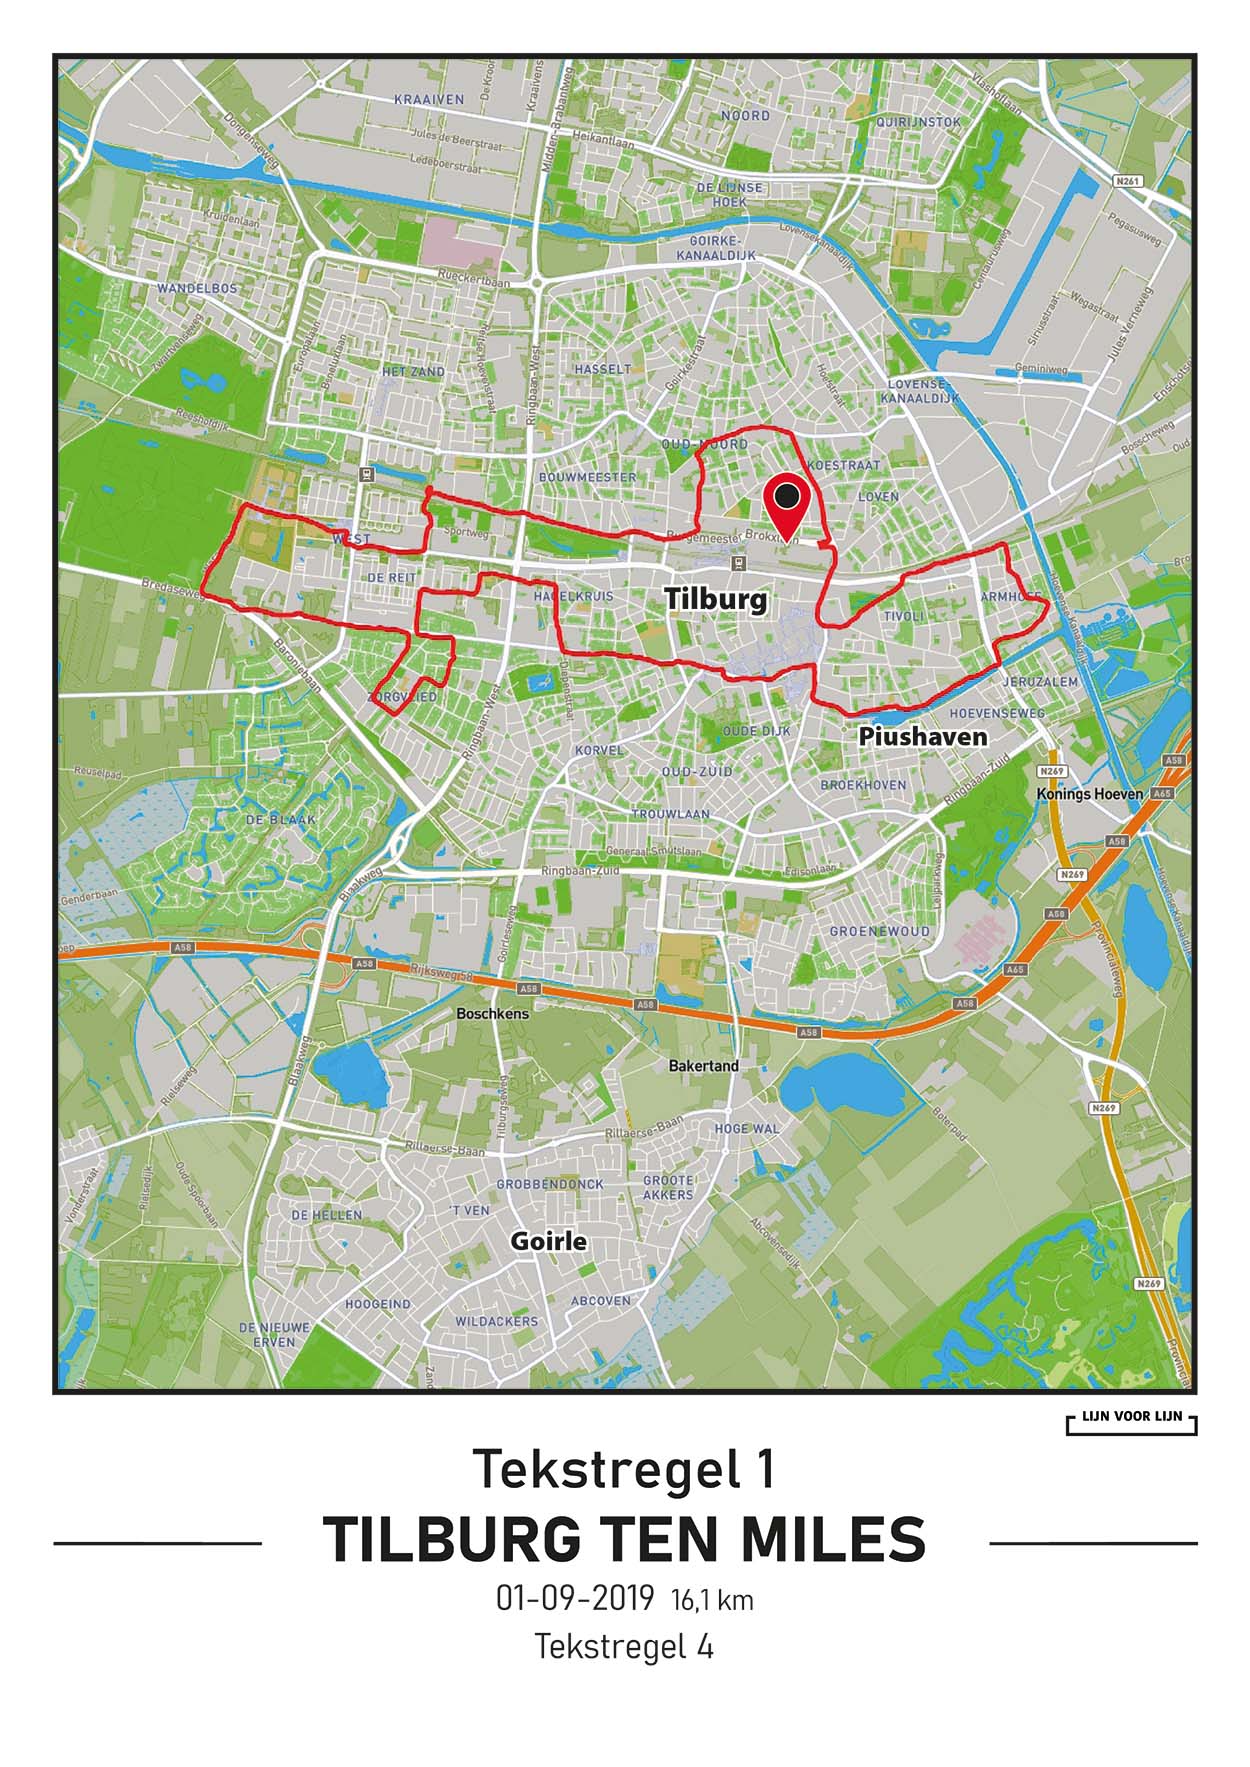 Tilburg Ten Miles, TTM, 16,1km, 2019